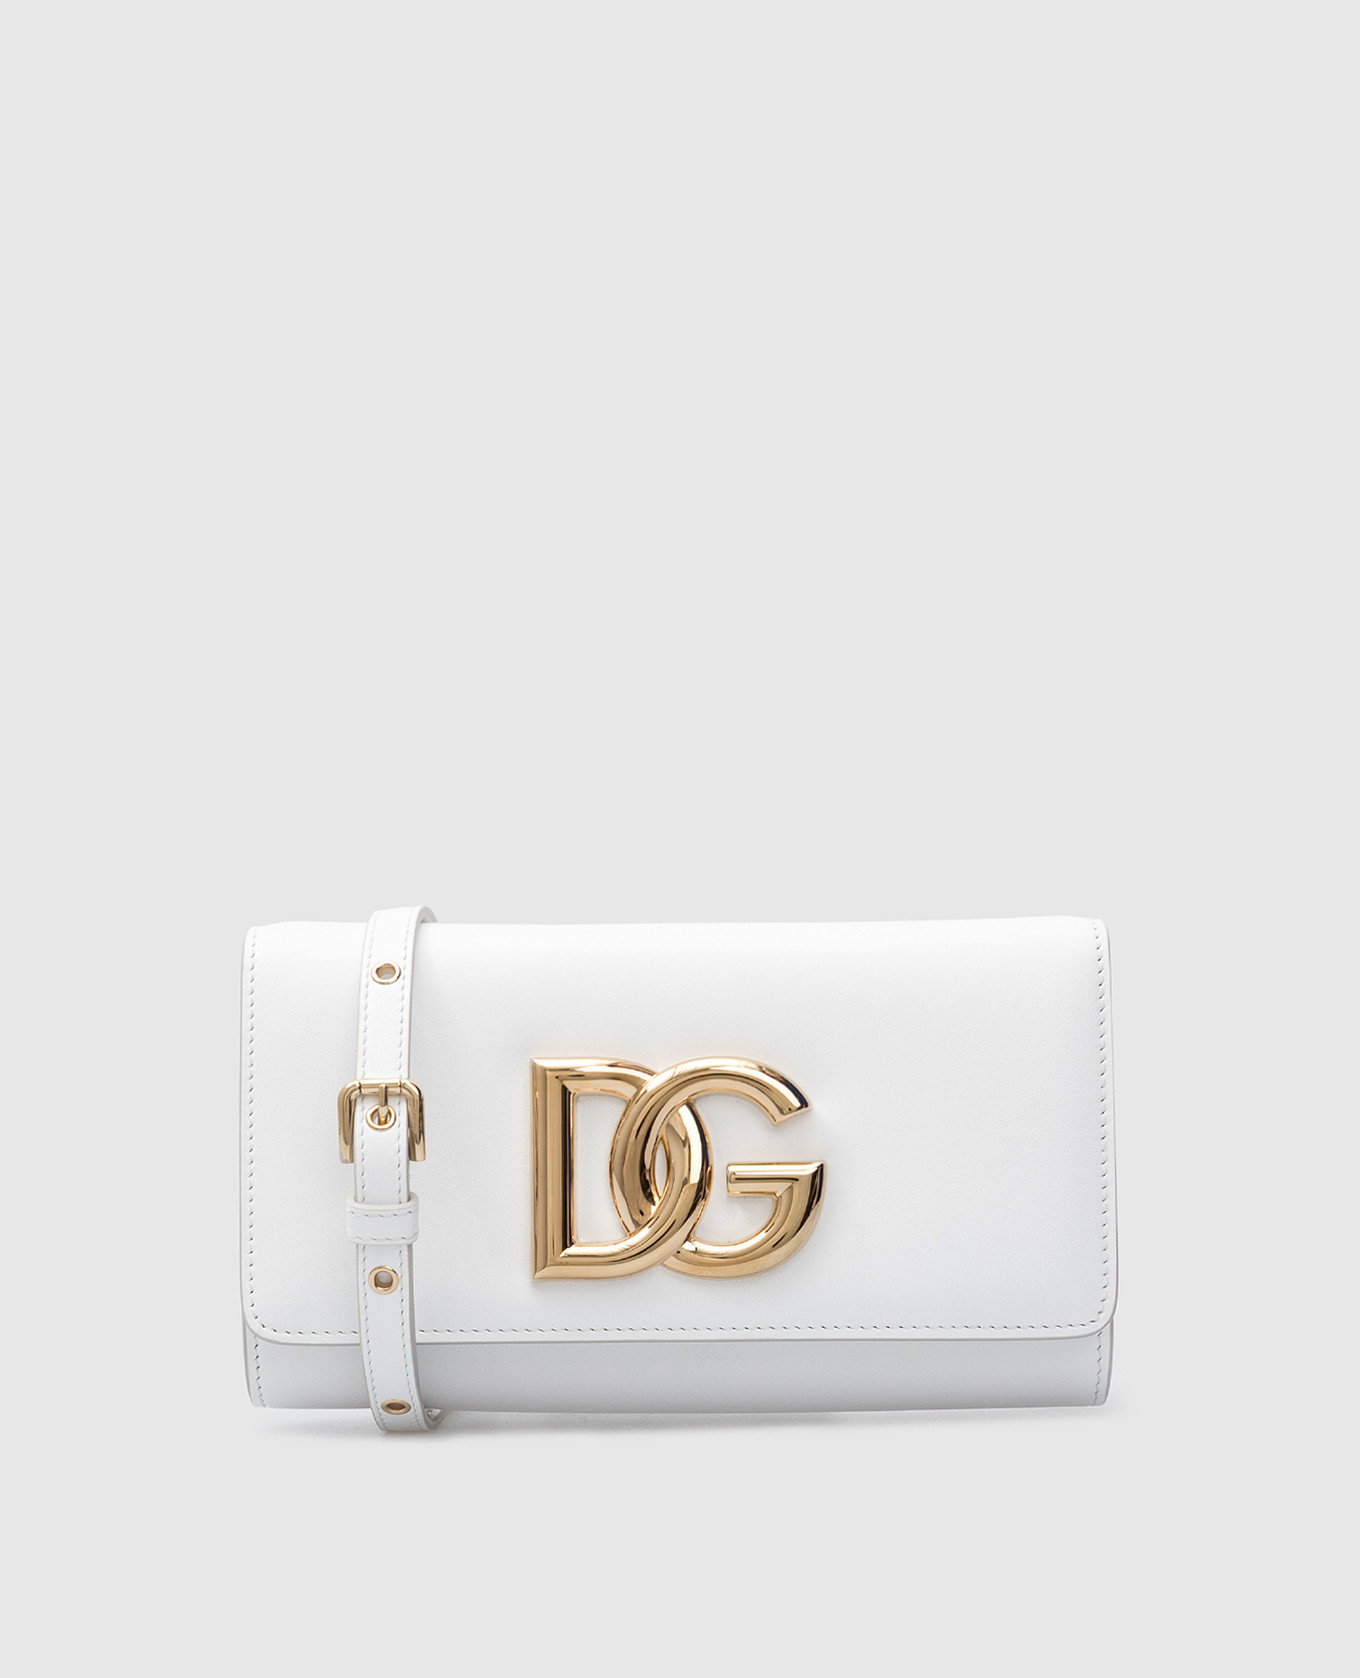 Белый кожаный клатч 3.5 с эмблемой DG